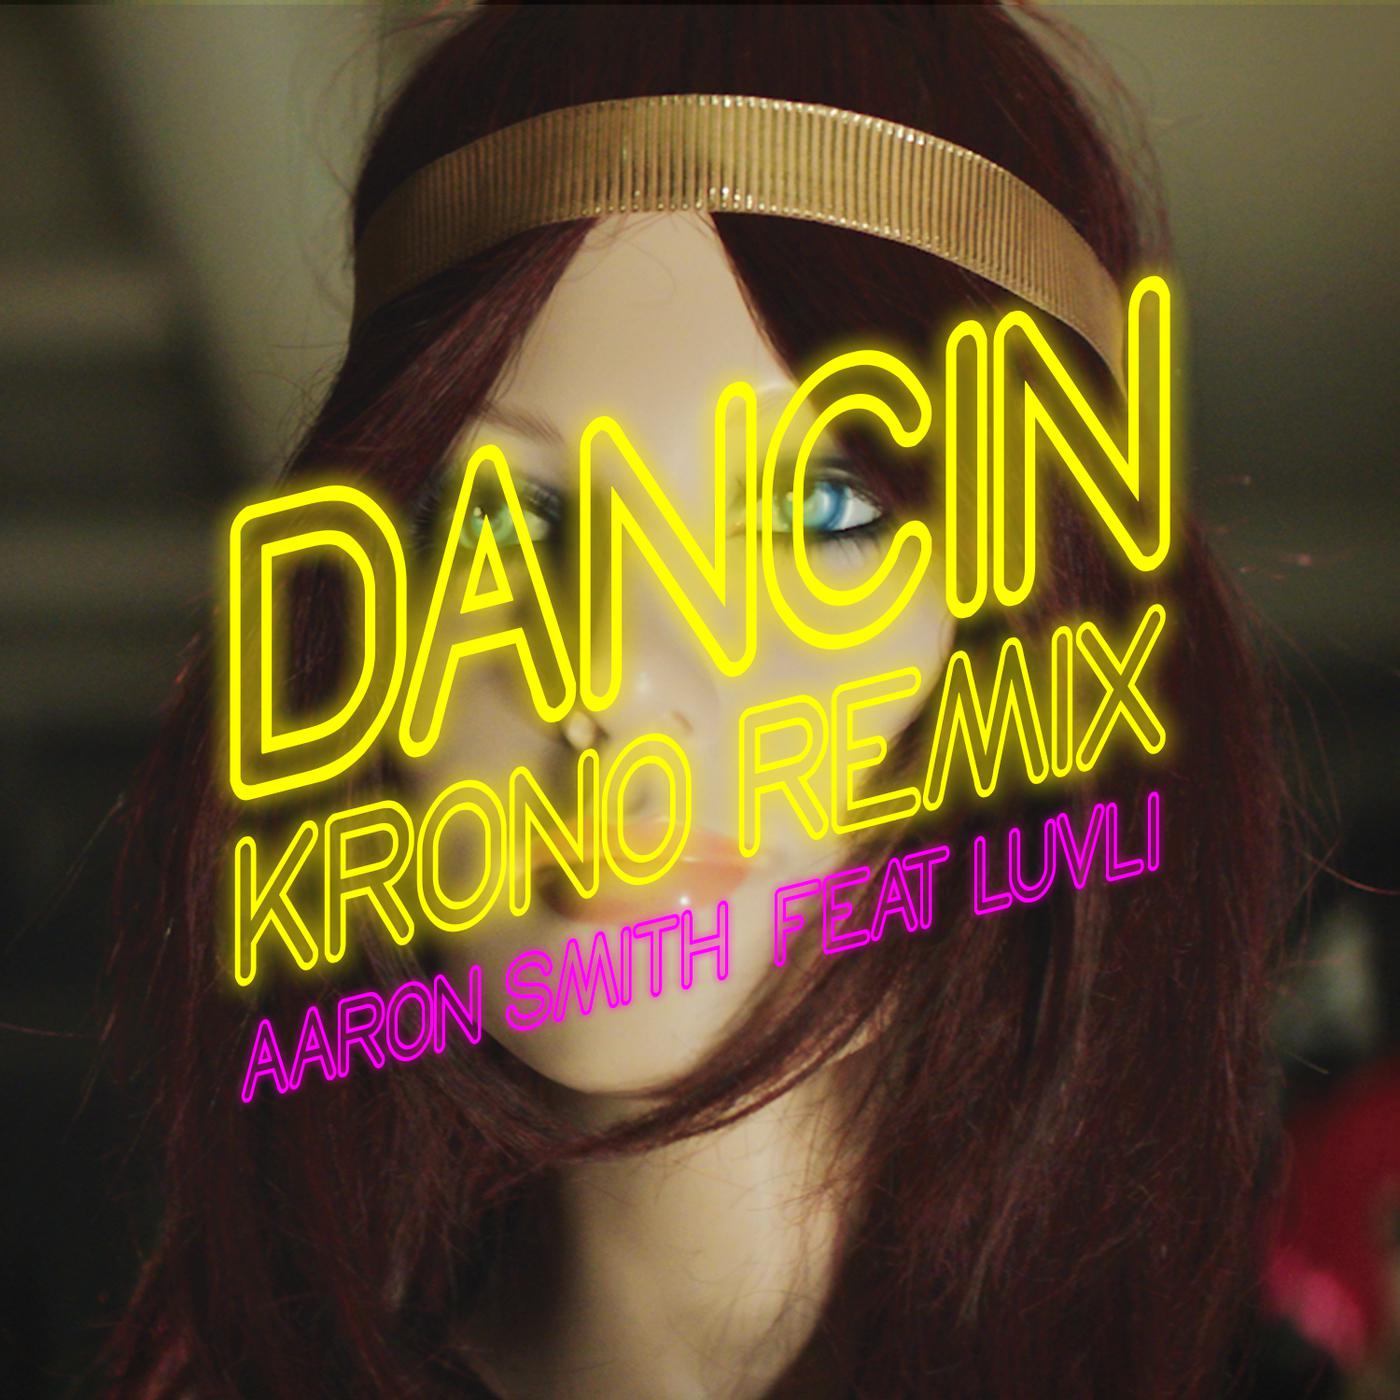 So soaked remix. Aaron Smith, Luvli Dancin. Aaron Smith Dancin Luvli Krono Remix. Dancin Krono Remix.